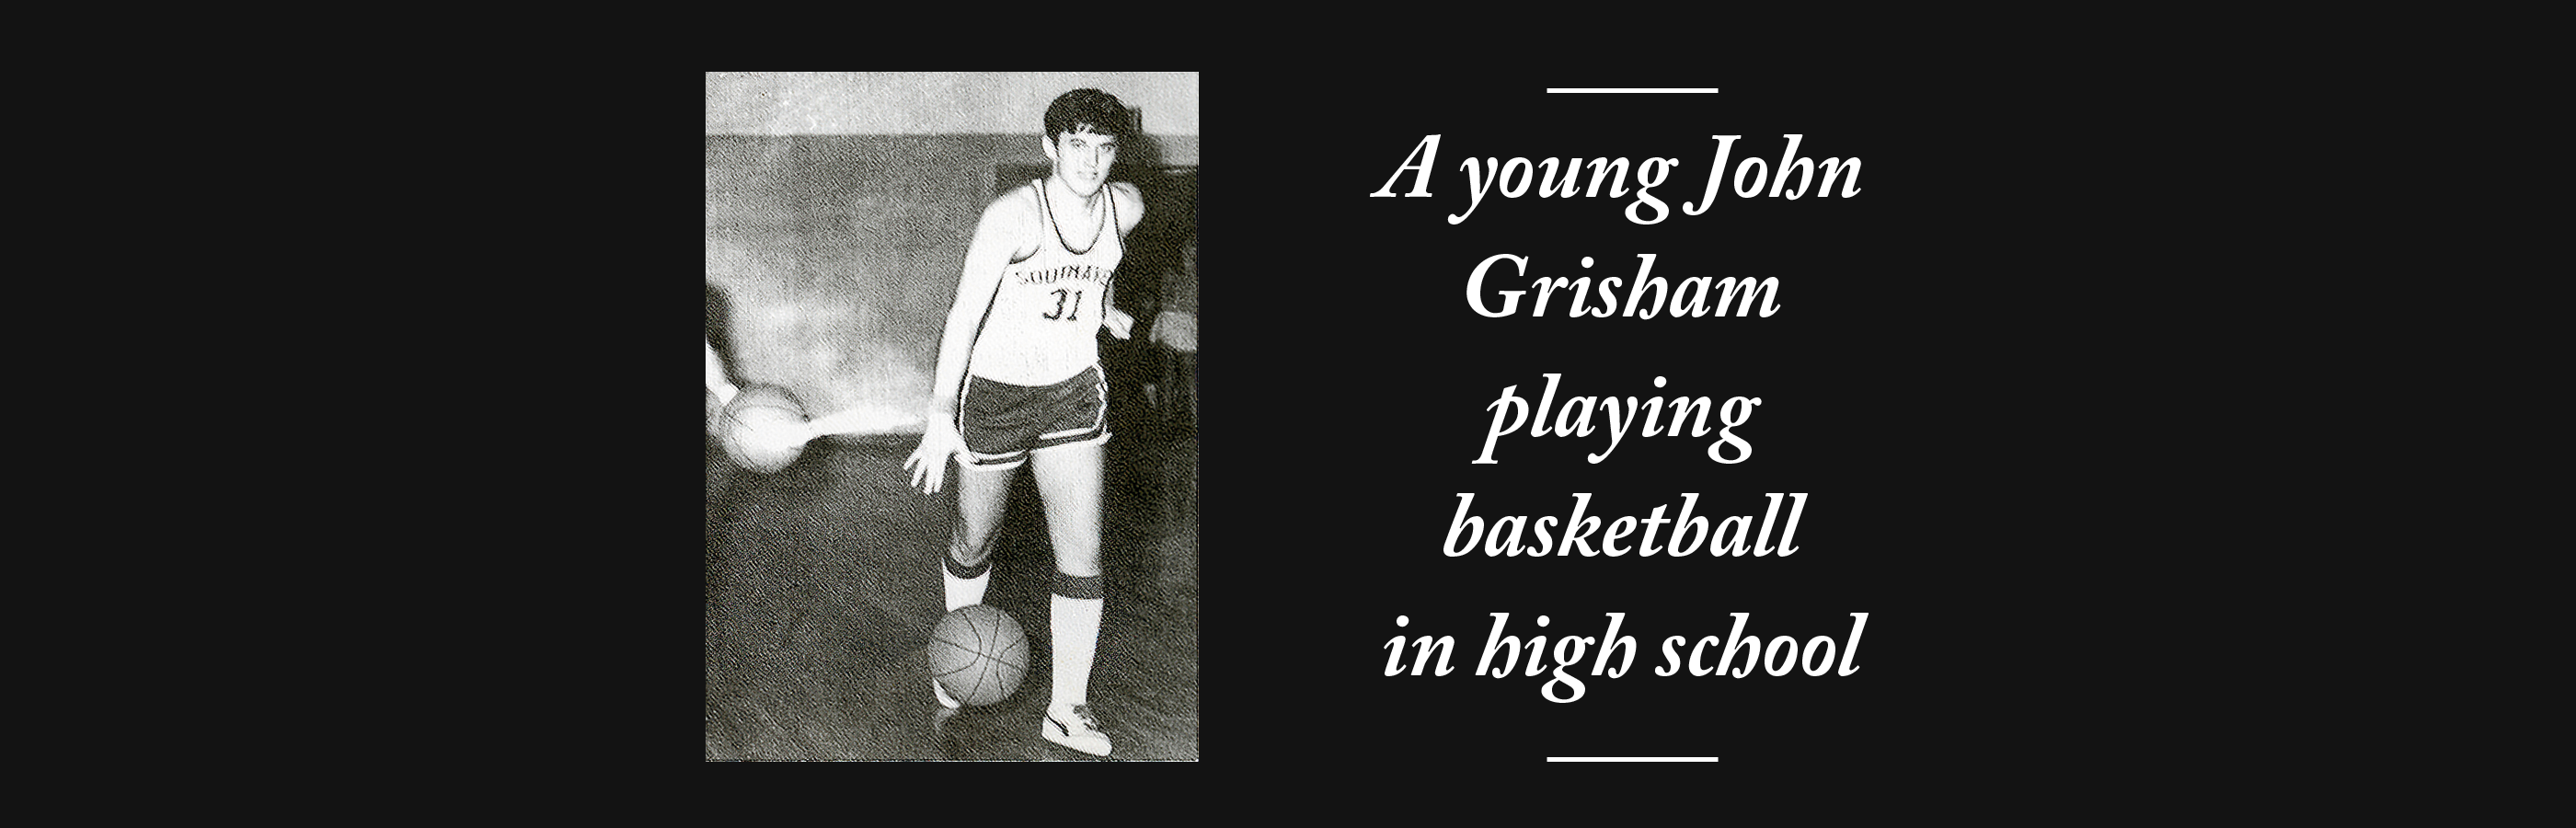 John Grisham Basketball